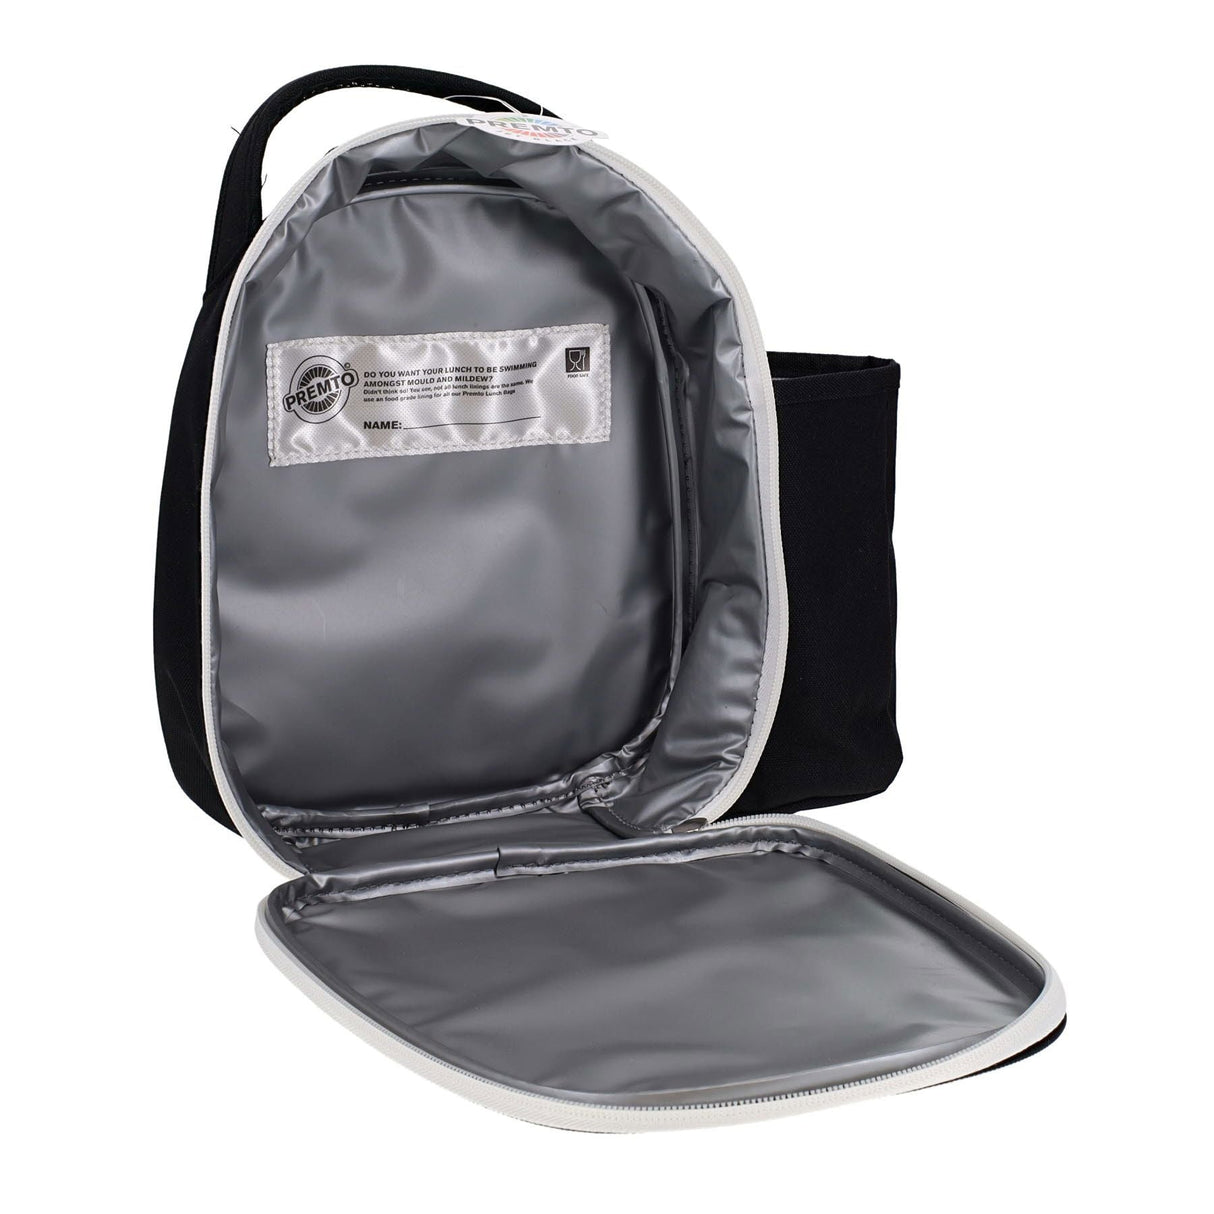 Premto Lunch Bag - Jet Black-Lunch Boxes-Premto|StationeryShop.co.uk